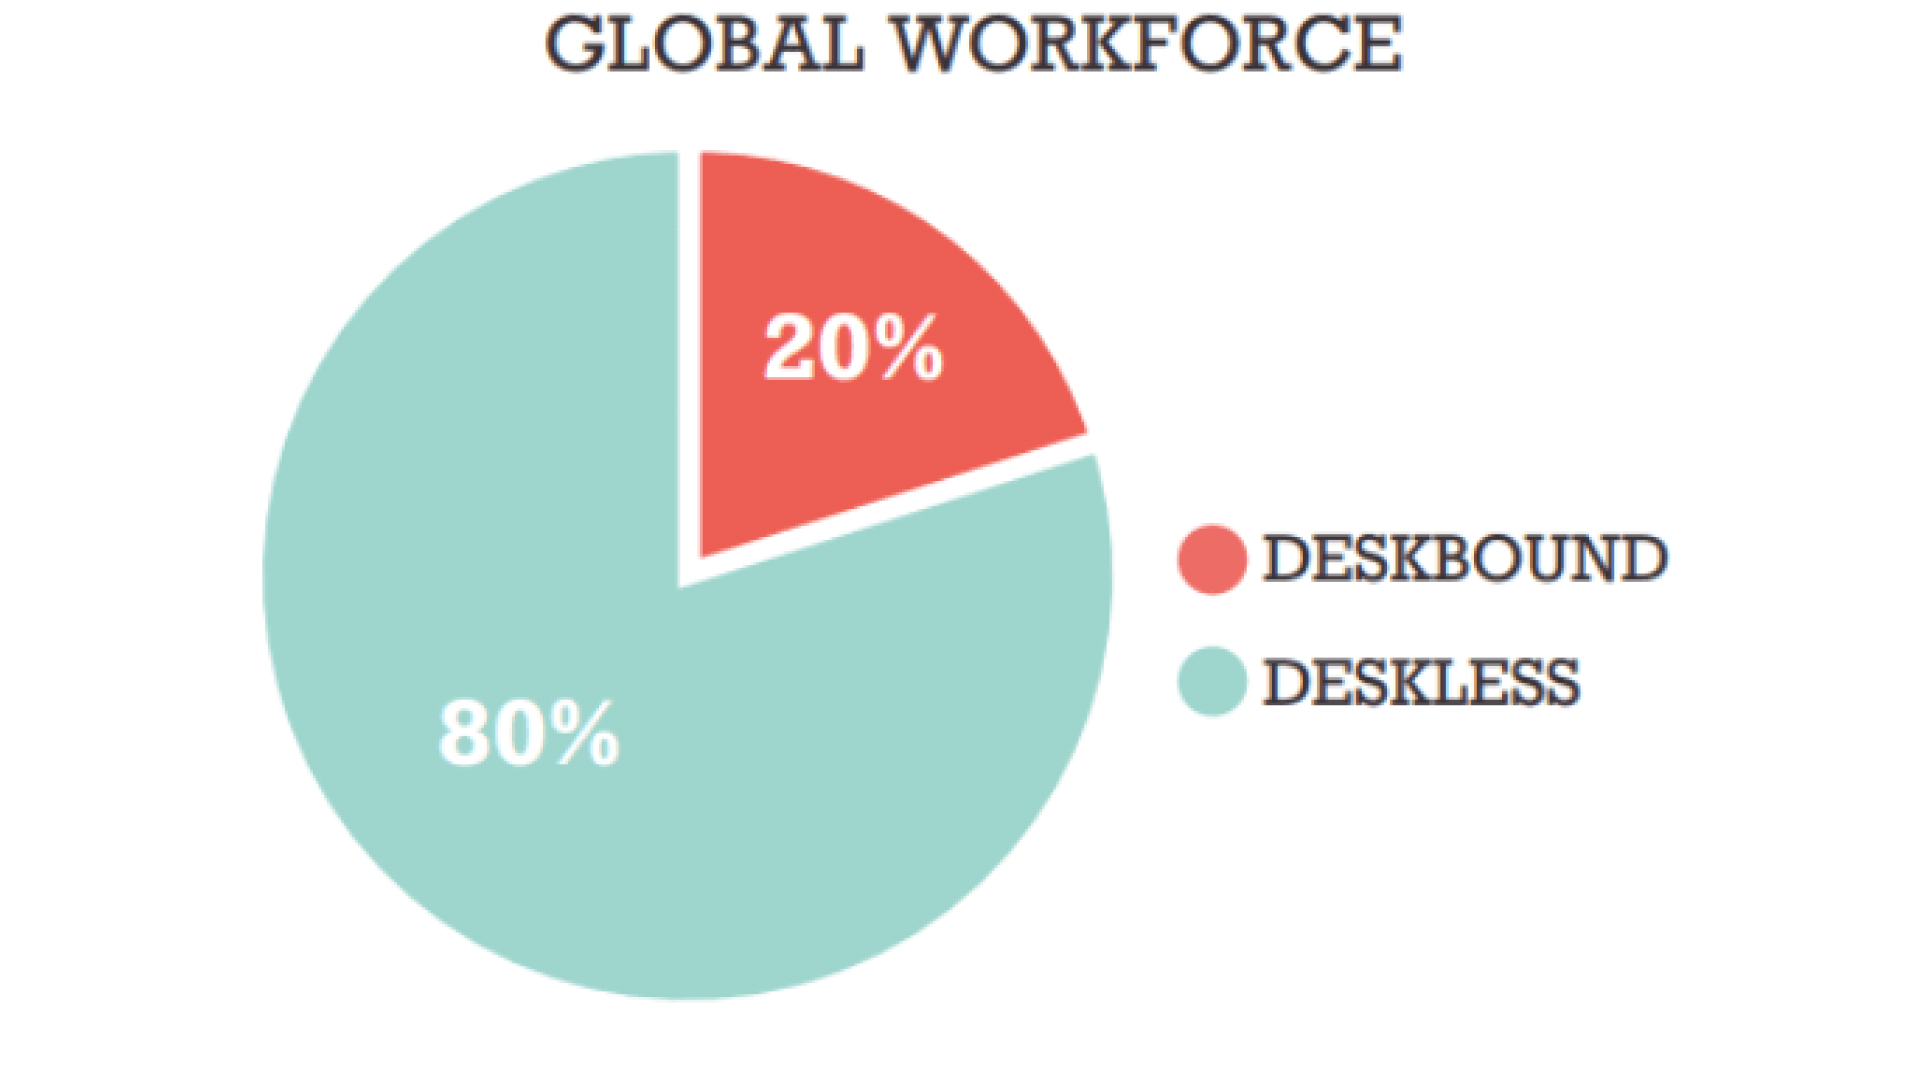 Breakdown for global workforce